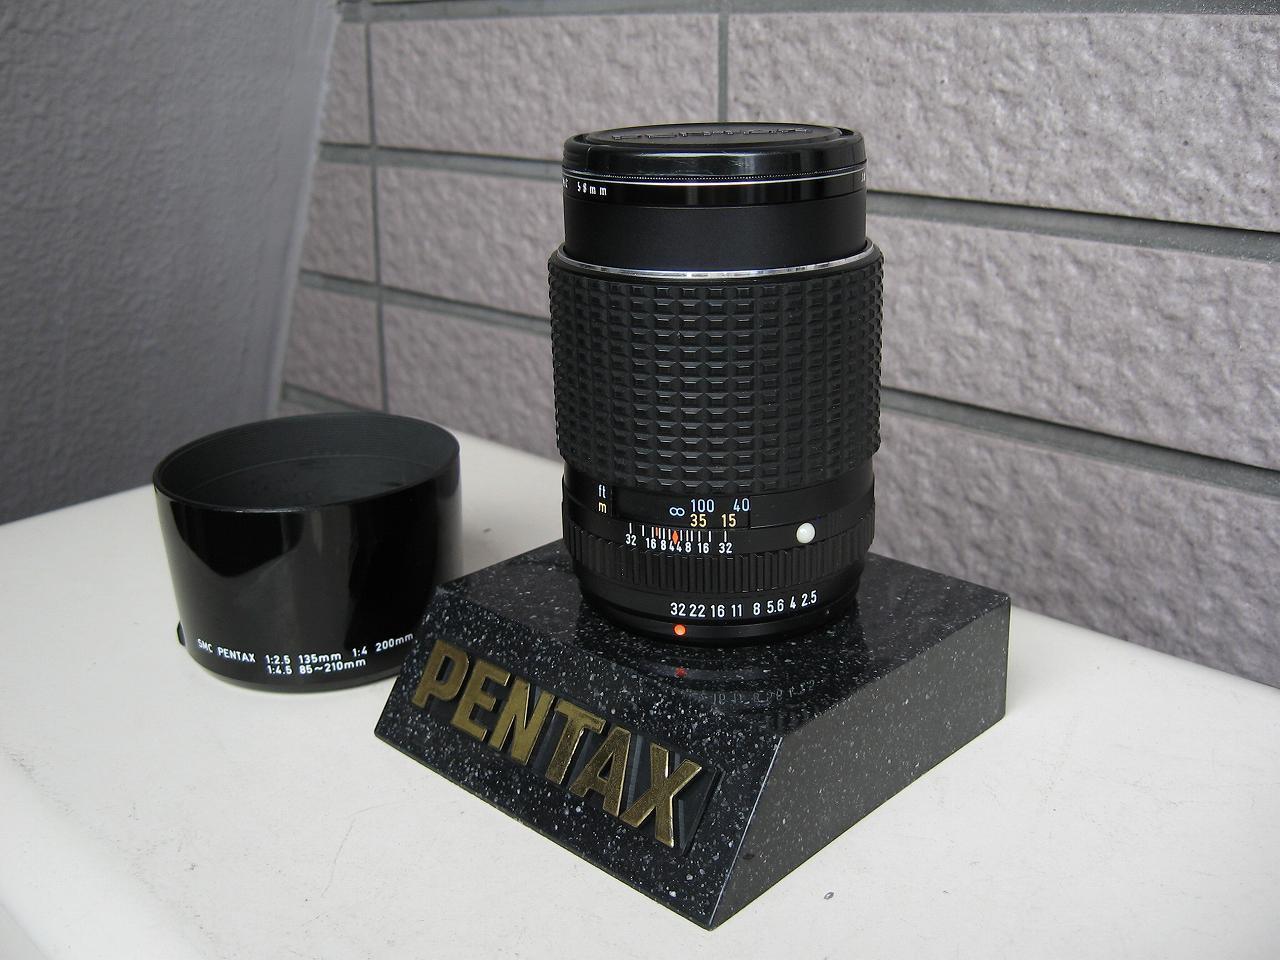 smc PENTAX 1:2.5 135mm